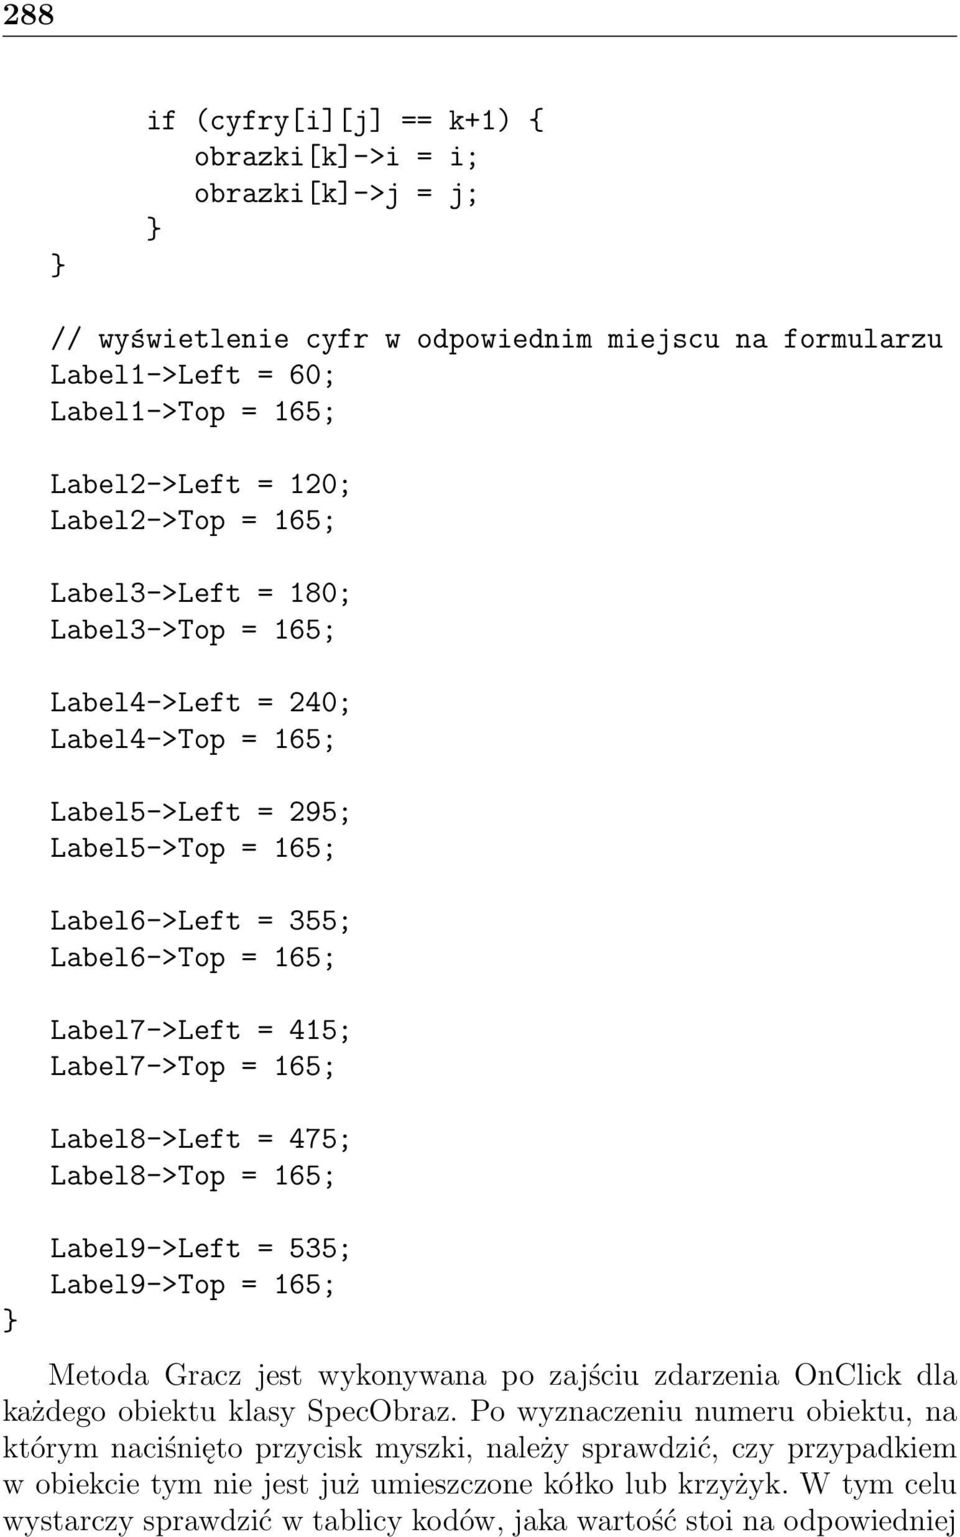 Label8->Left = 475; Label8->Top = 165; Label9->Left = 535; Label9->Top = 165; Metoda Gracz jest wykonywana po zajściu zdarzenia OnClick dla każdego obiektu klasy SpecObraz.